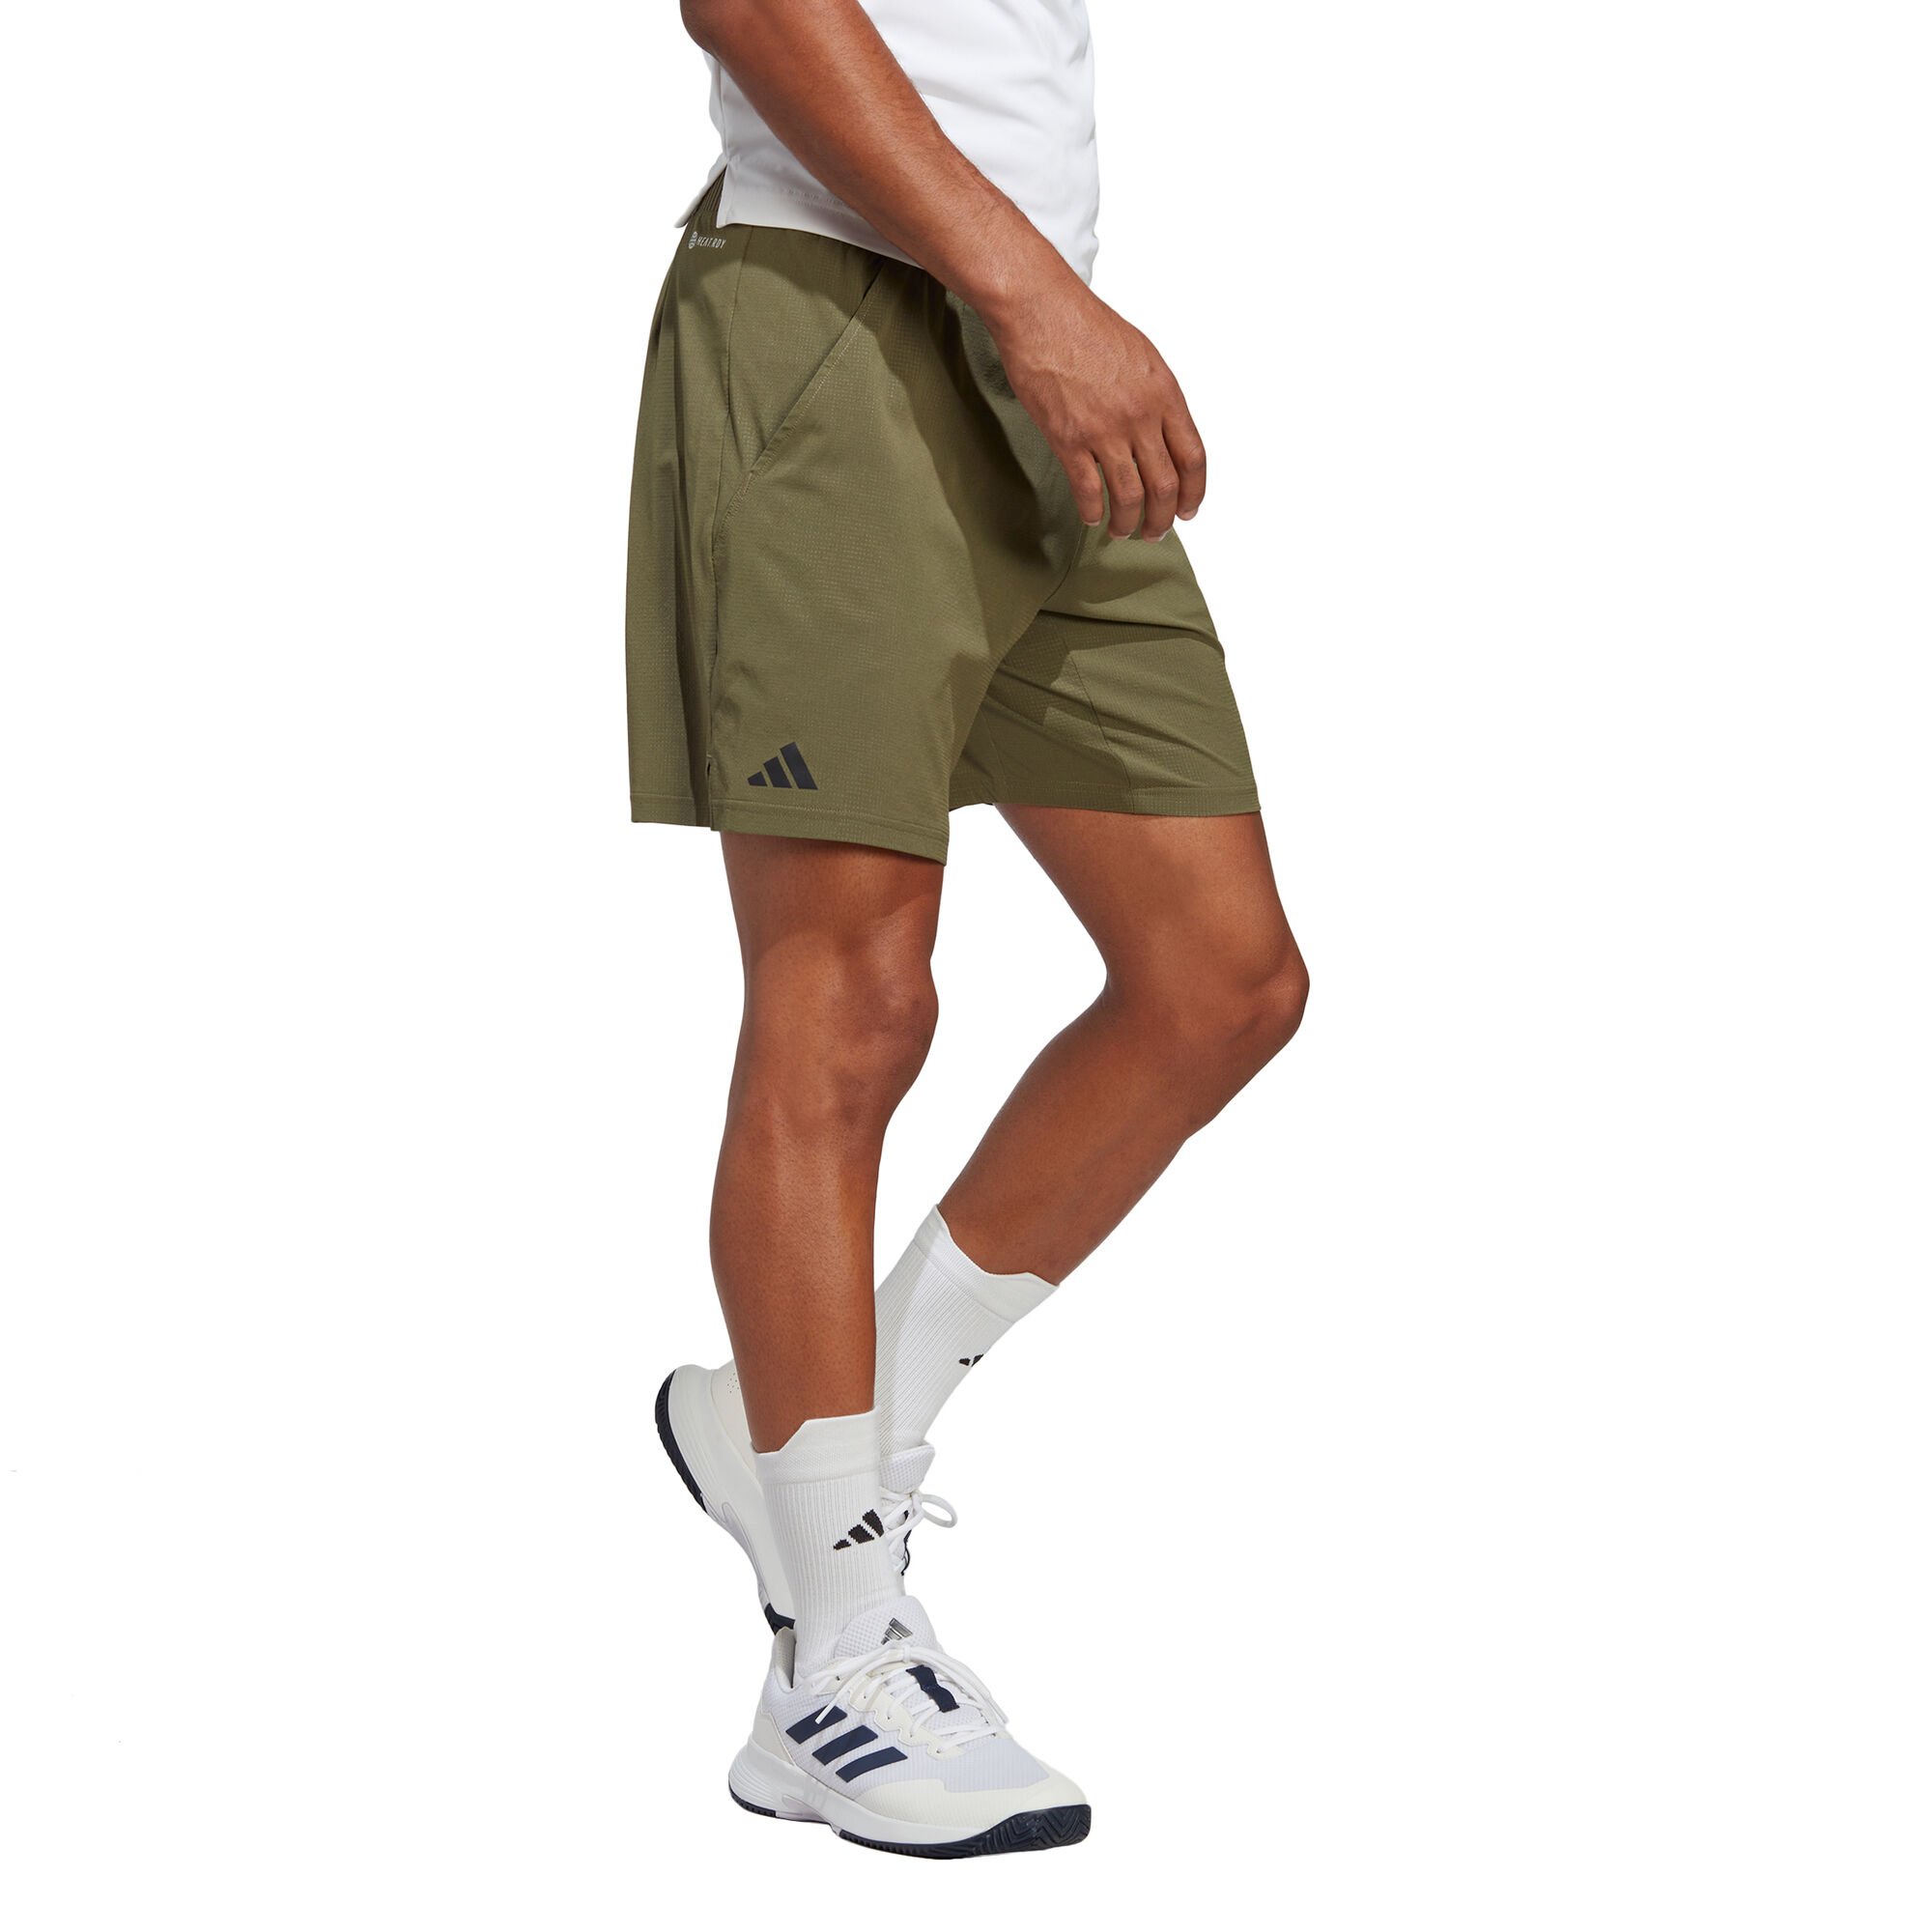 Buy adidas Ergo Shorts Men Olive online